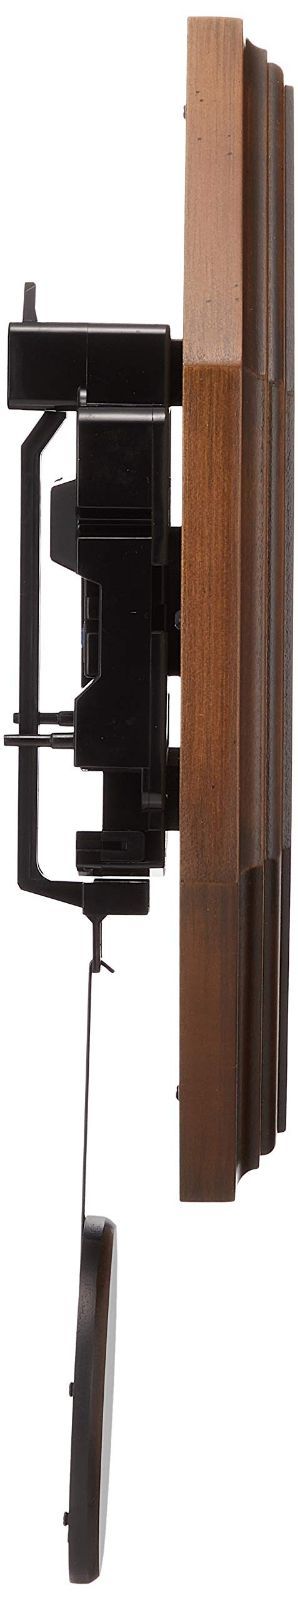 さんてる レトロ 電波 振り子 柱時計 日本製掛け時計 八角 (木文字) DQL635 アンティークブラウン φ270×380mm - 1